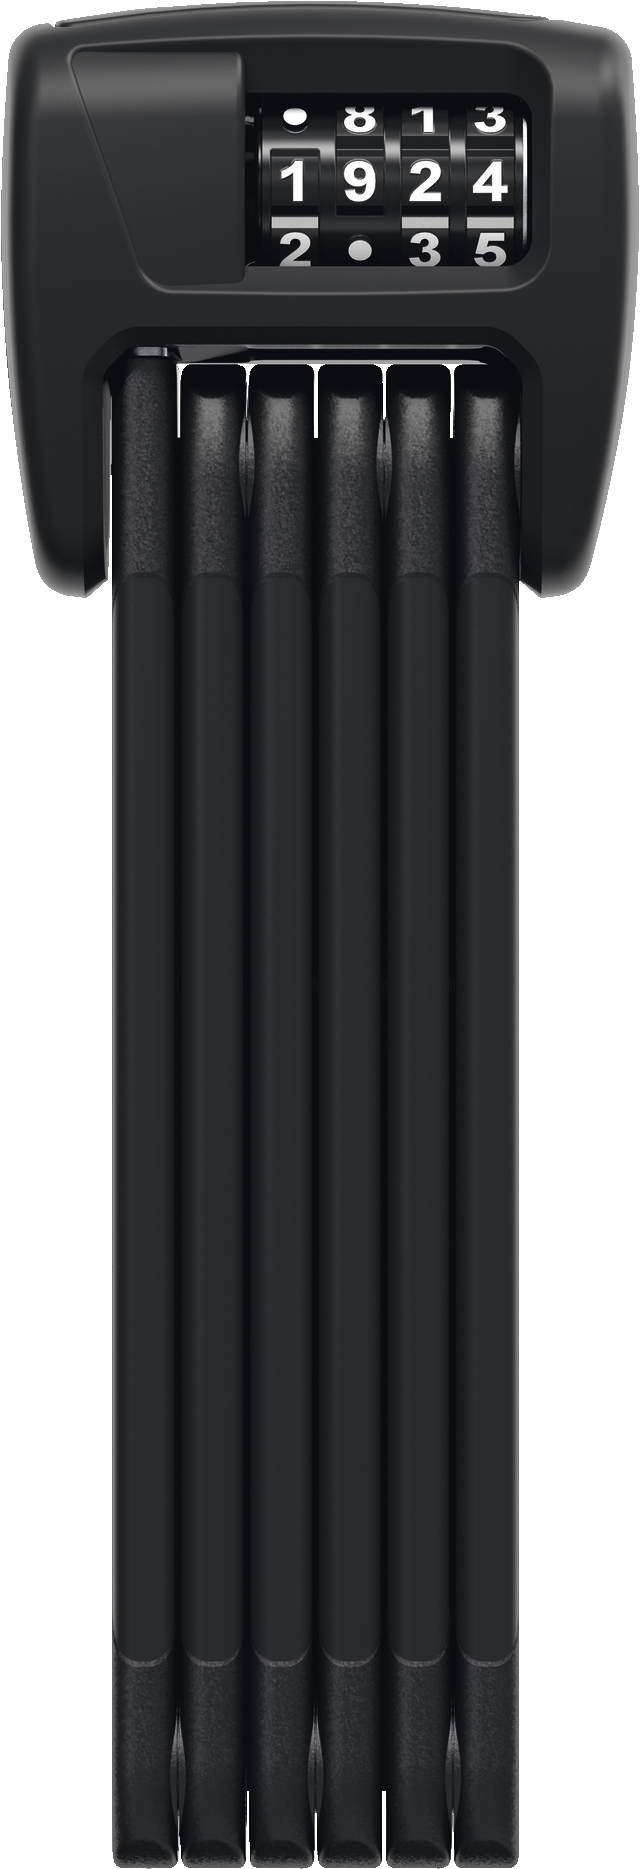 Candados plegables - BORDO™ 6000C LED